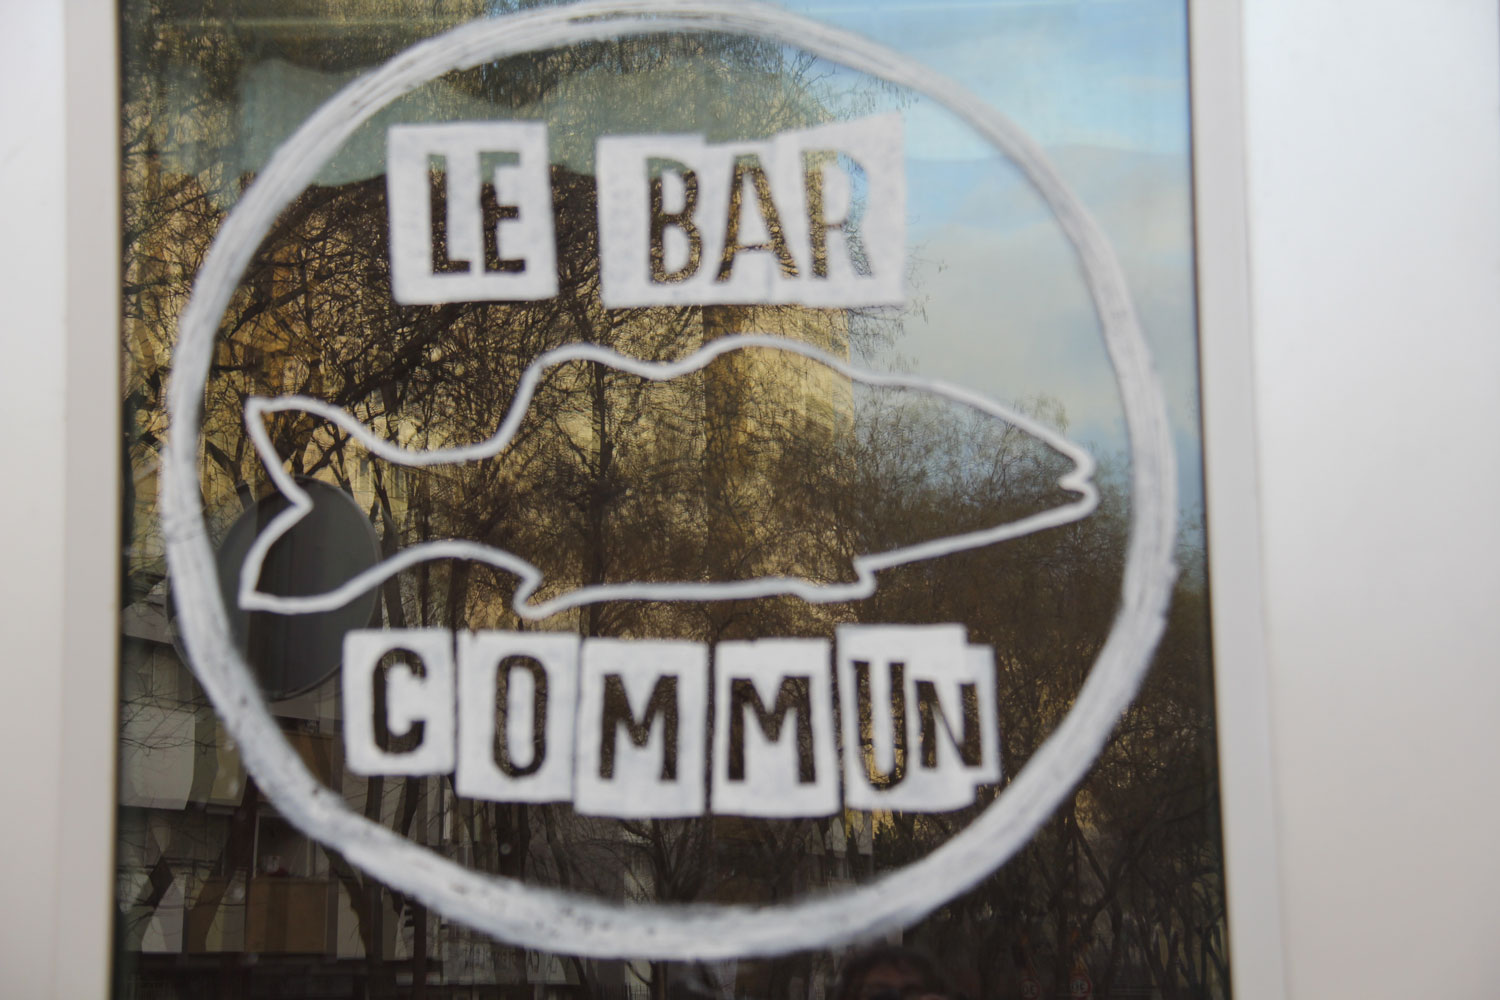 Le bar commun est un café associatif. Son propriétaire n’est pas une personne, mais une association). Au moment du reportage, il est fermé comme tous les autres cafés parisiens sauf pour permettre aux sans-abris de se retrouver le jeudi après-midi, c’est essentiel pour eux © Globe Reporters